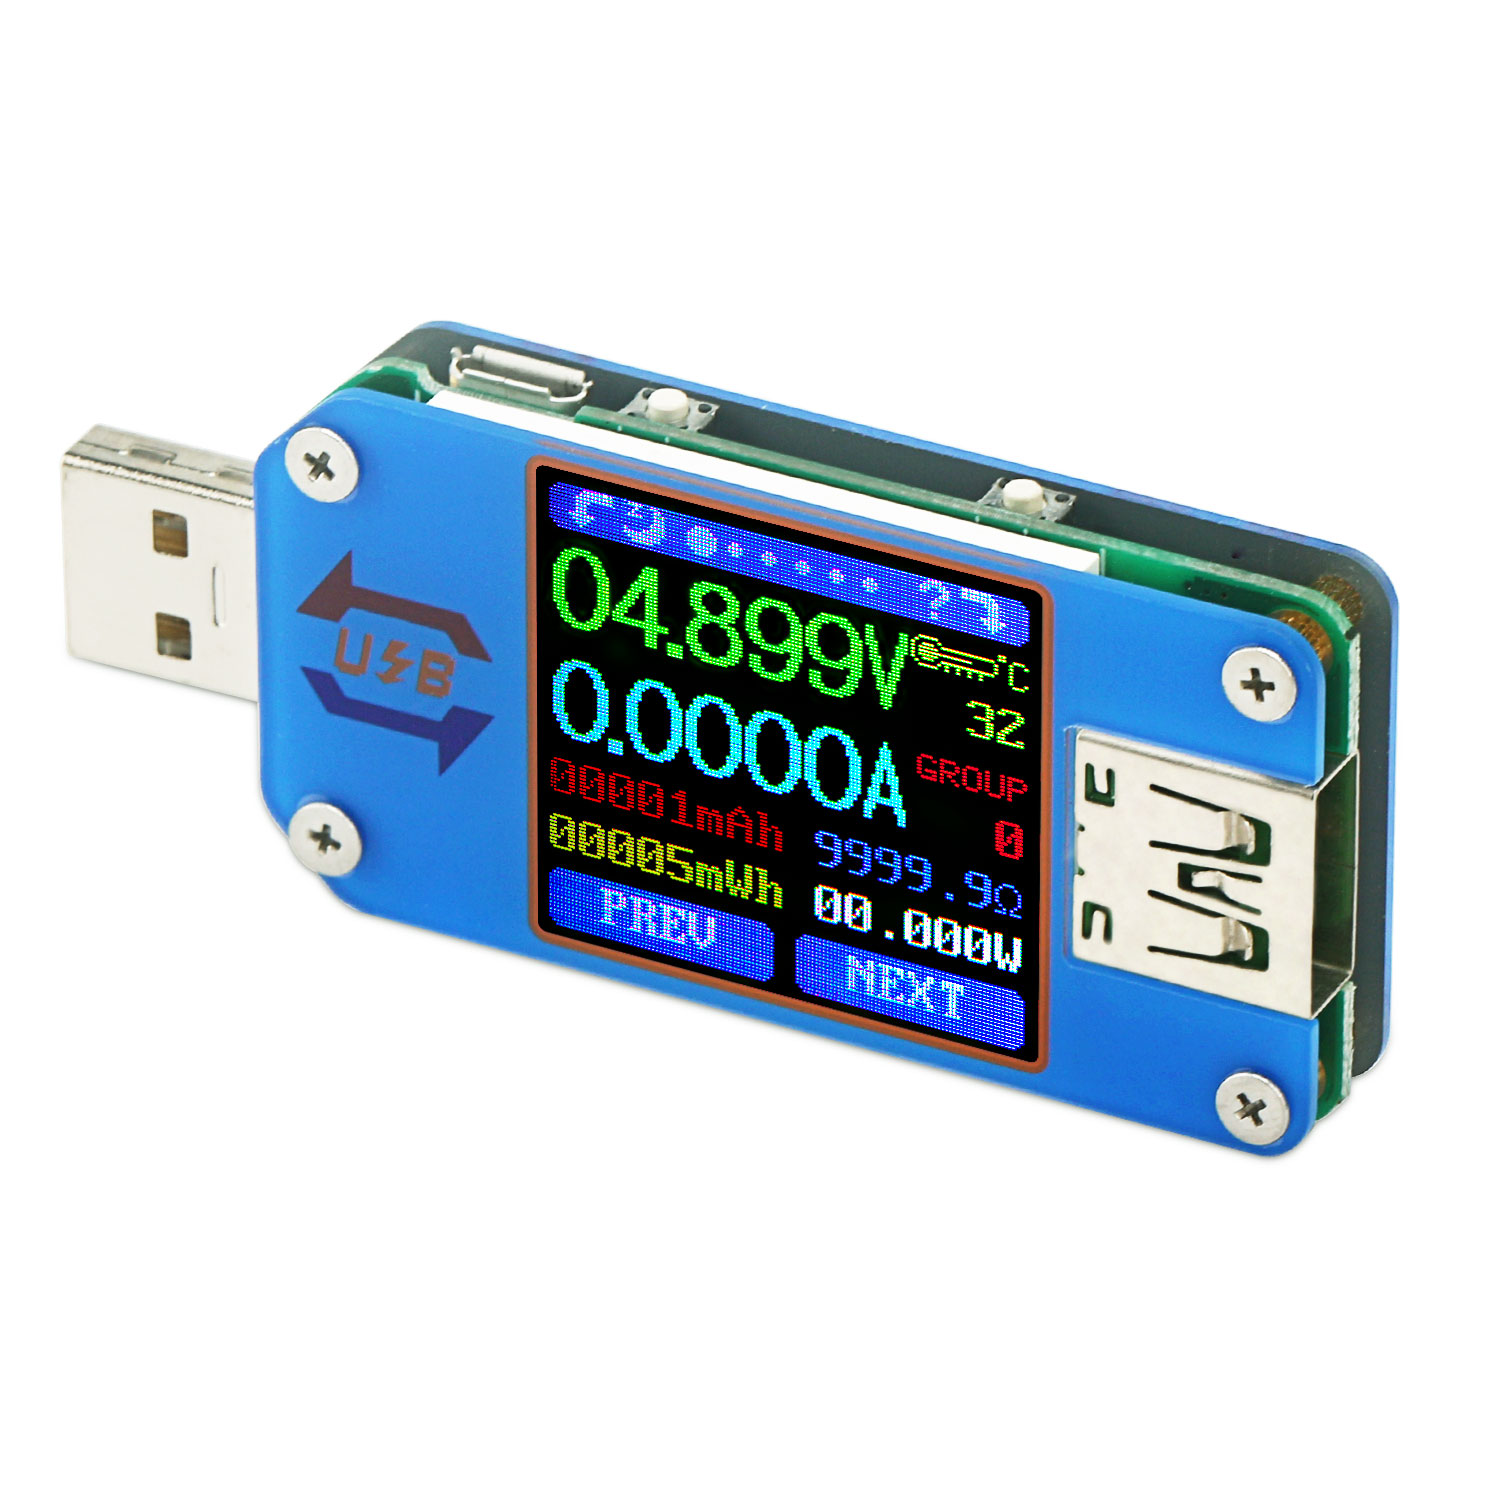 C Color LCD Display Tester Voltage Current Meter Voltmeter Ammeter Battery Charge Cable Impedance Resistance Measurement Communication Version Festnight RD UM25/UM25C USB 2.0 Type 